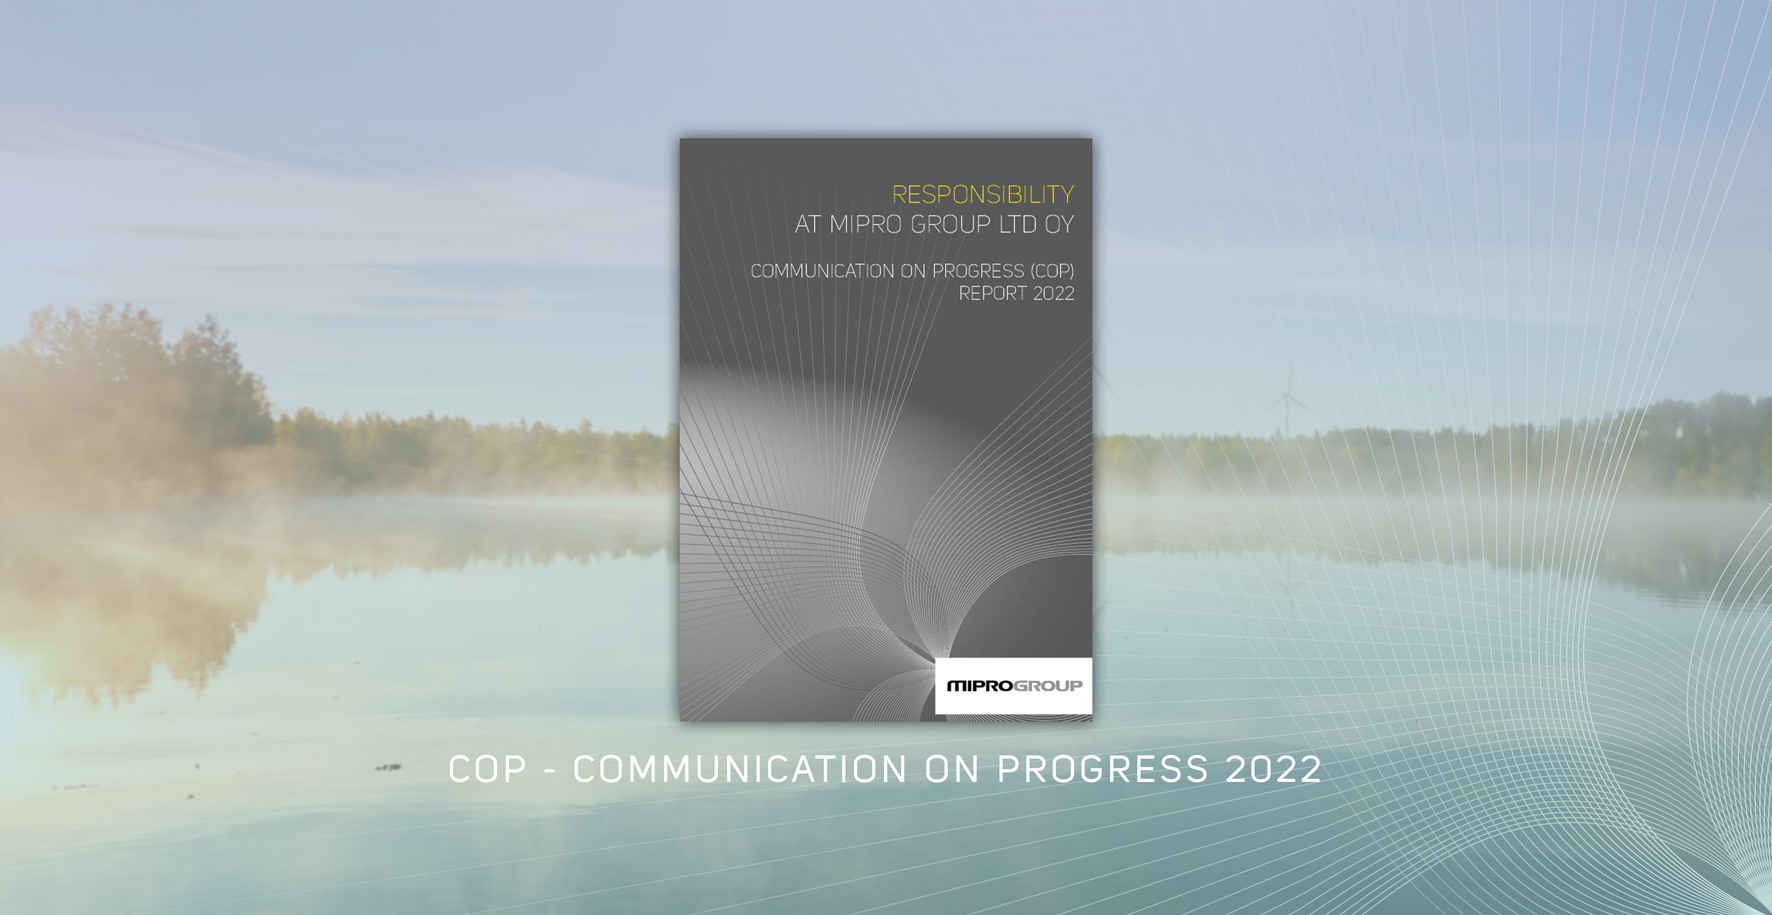 Vuoden 2022 yhteiskuntavastuuraportti (COP – Communication on Progress) on julkaistu